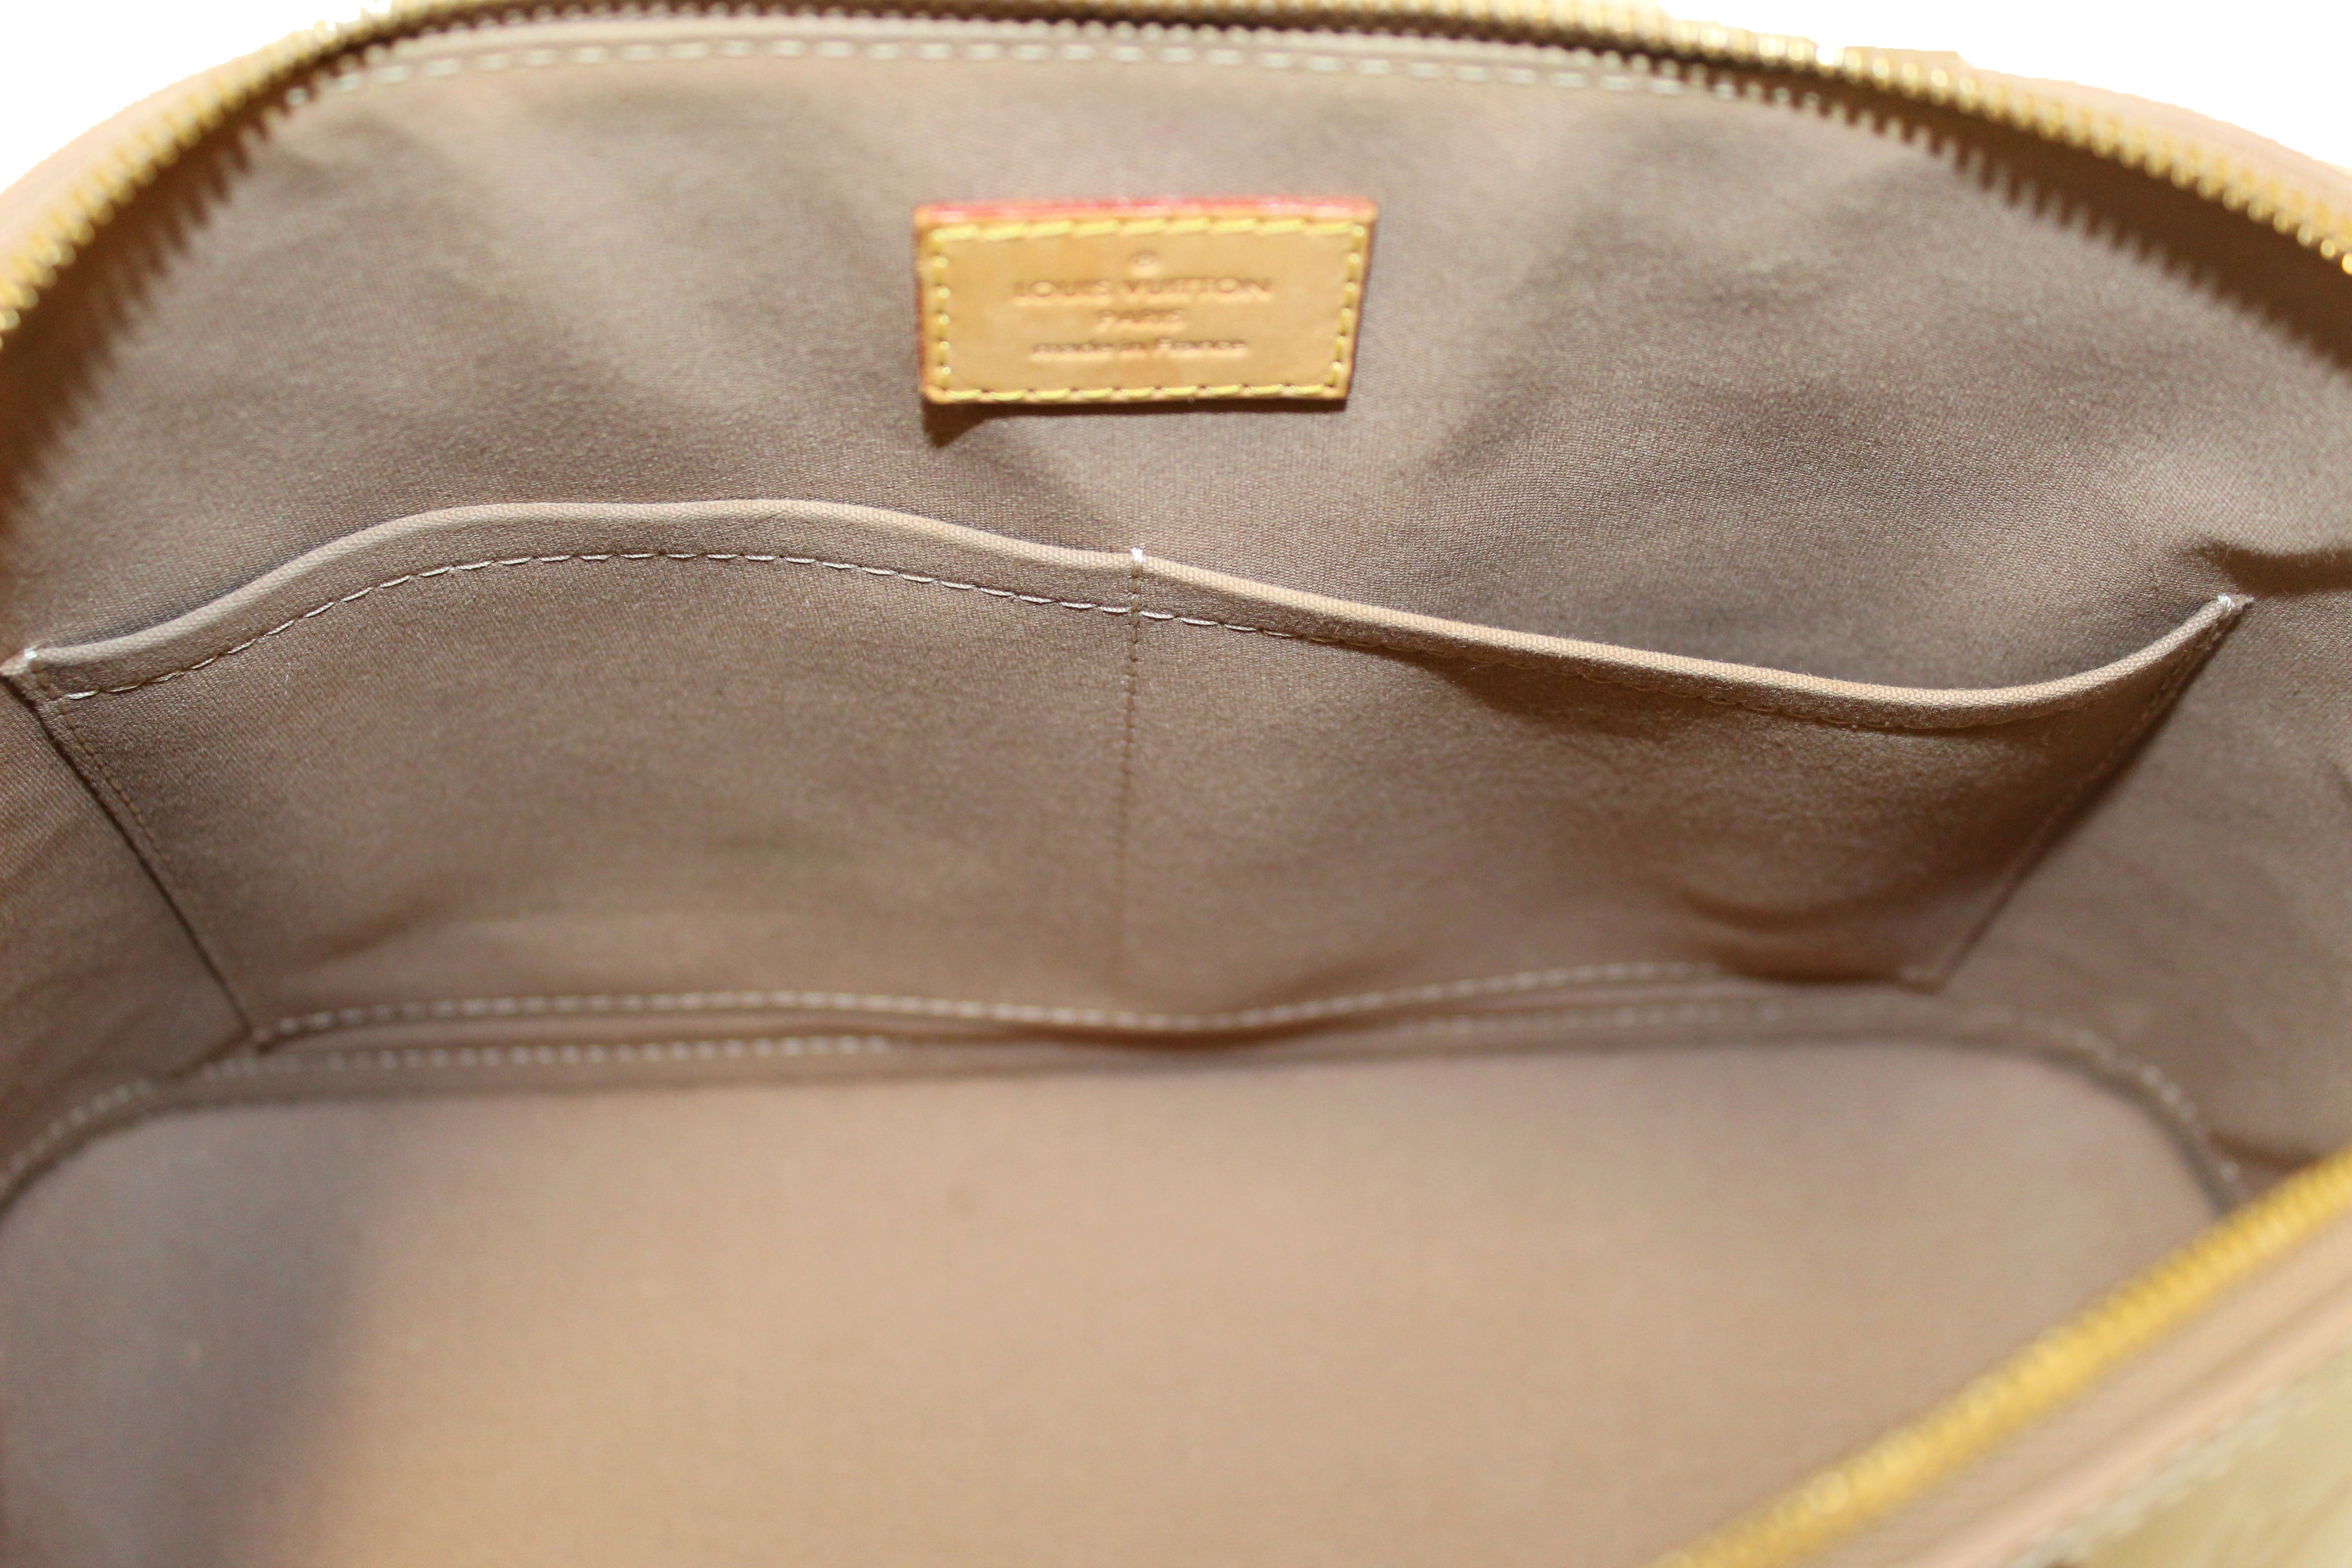 AUTHENTIC Louis Vuitton Vintage Alma PM w/ Dust Bag!